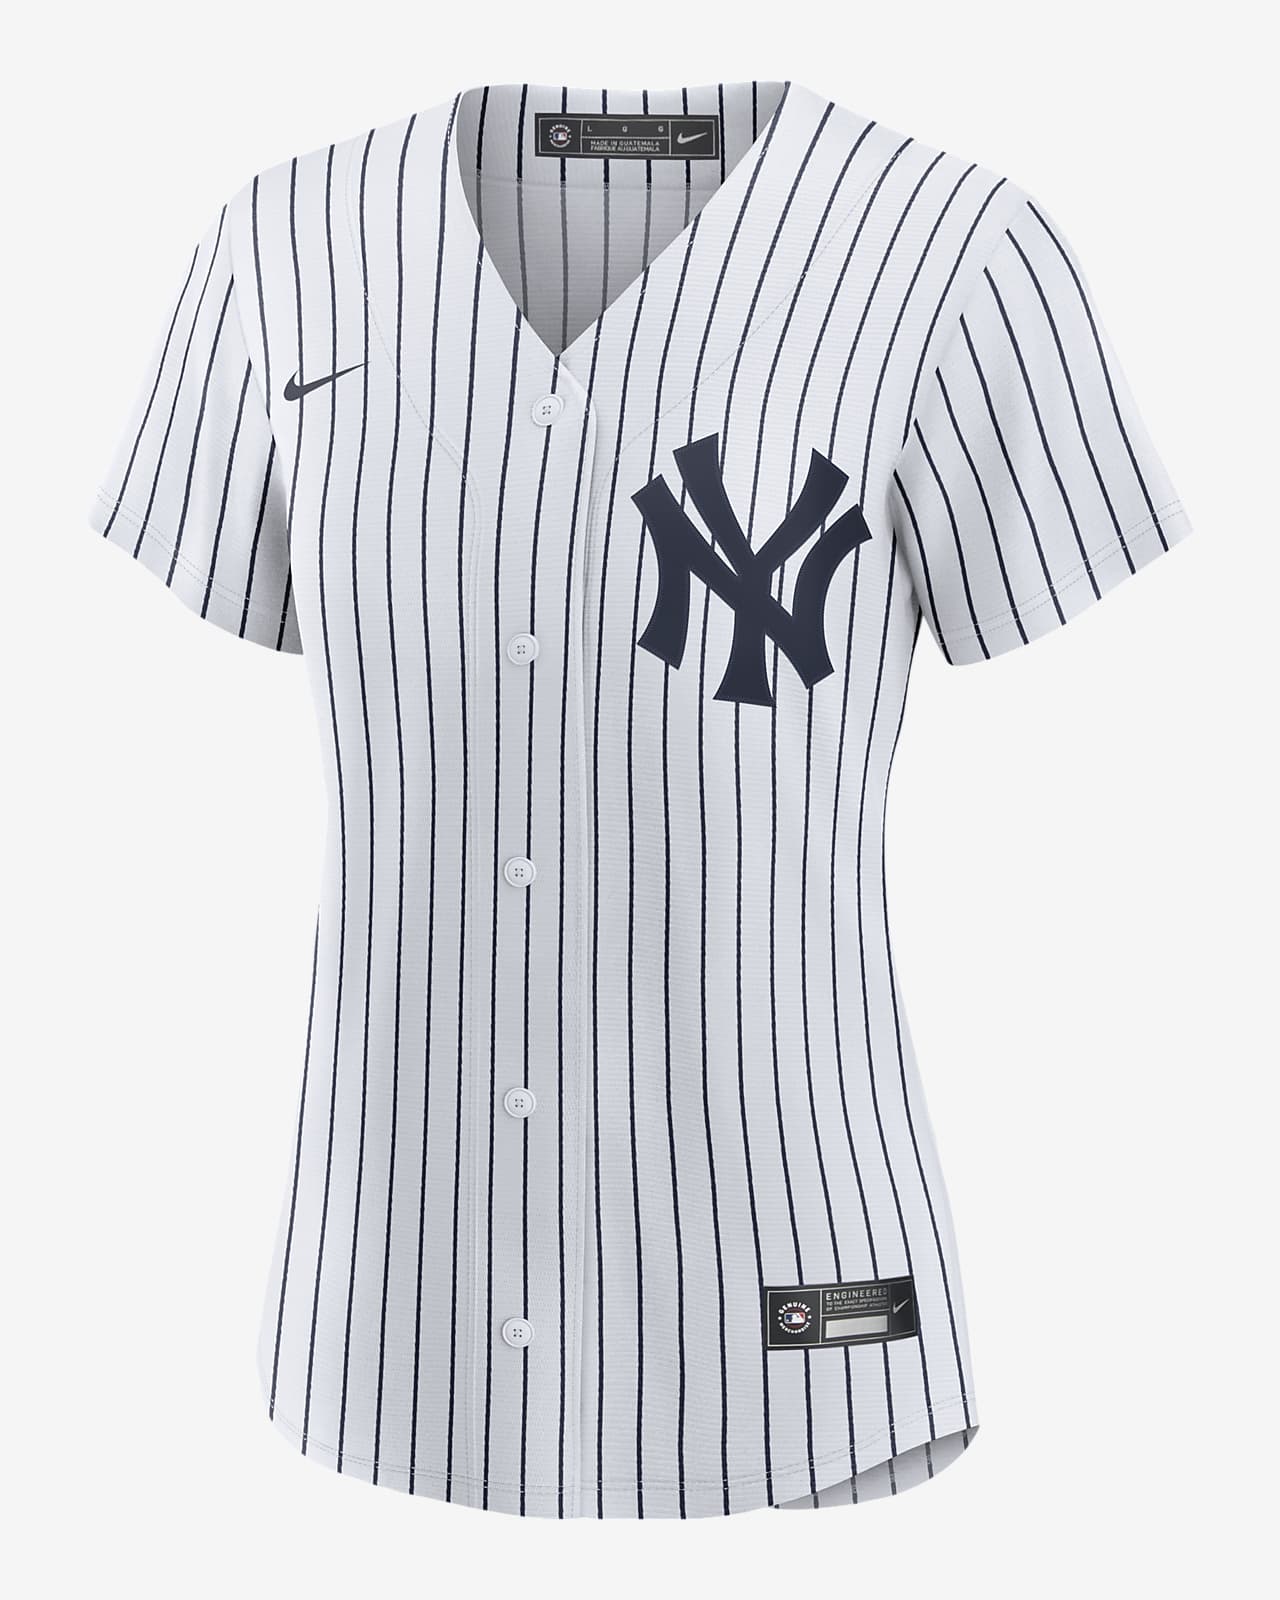 Jersey Nike de la MLB Replica para mujer Juan Soto New York Yankees